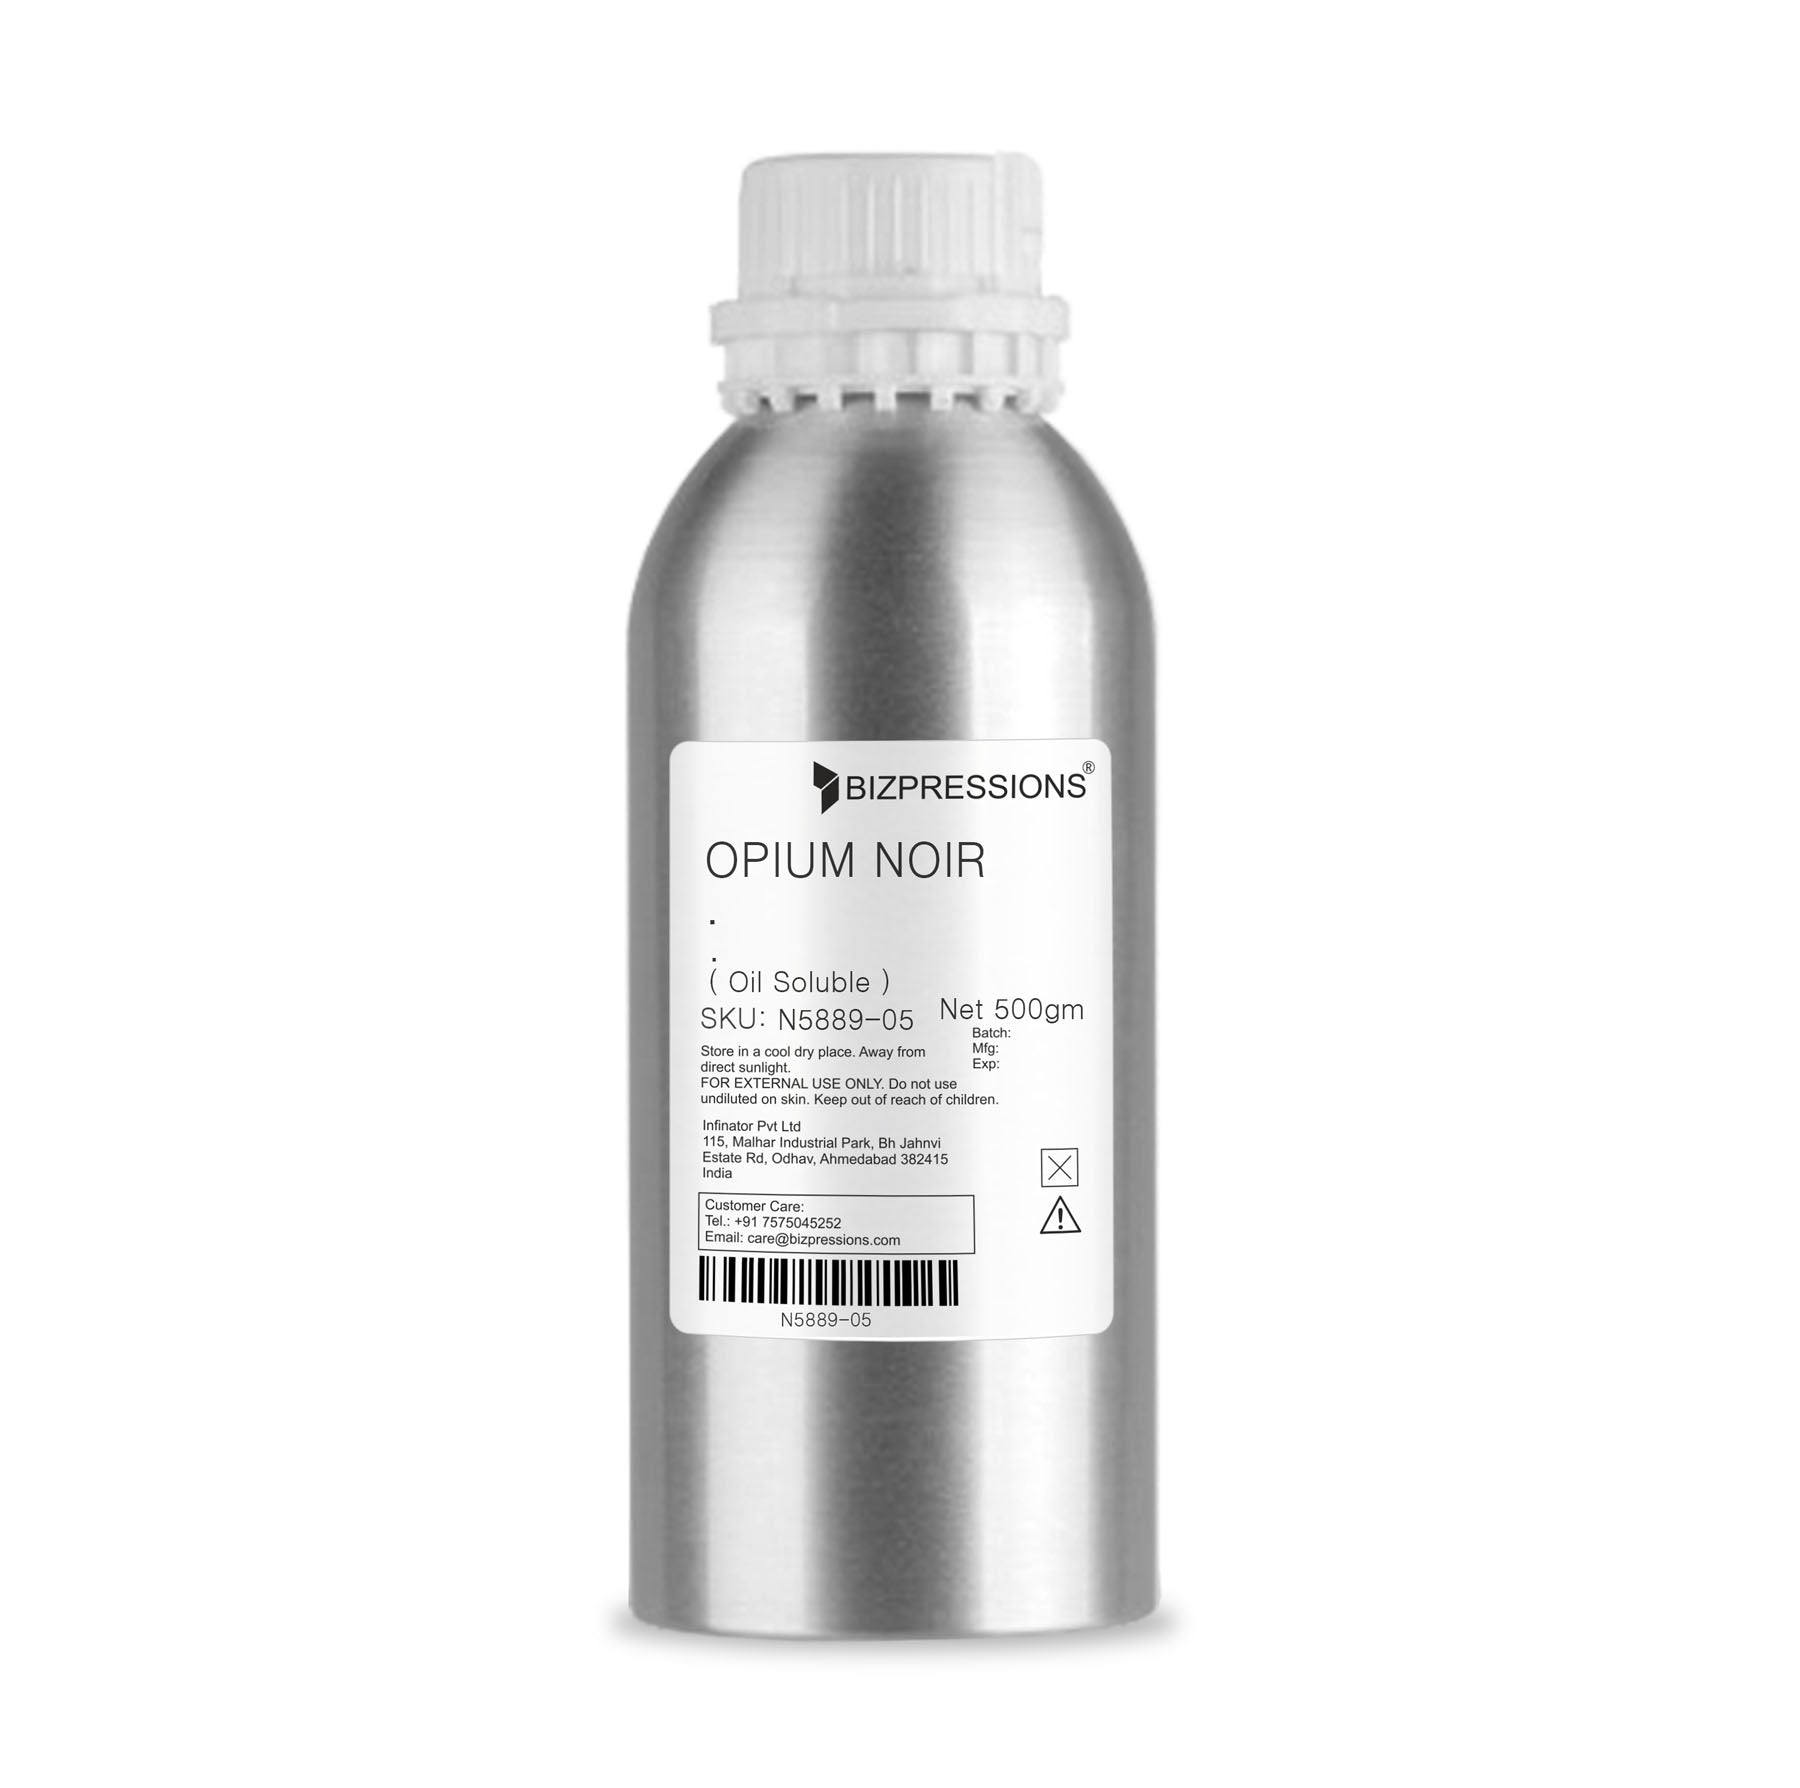 OPIUM NOIR - Fragrance ( Oil Soluble ) - 500 gm